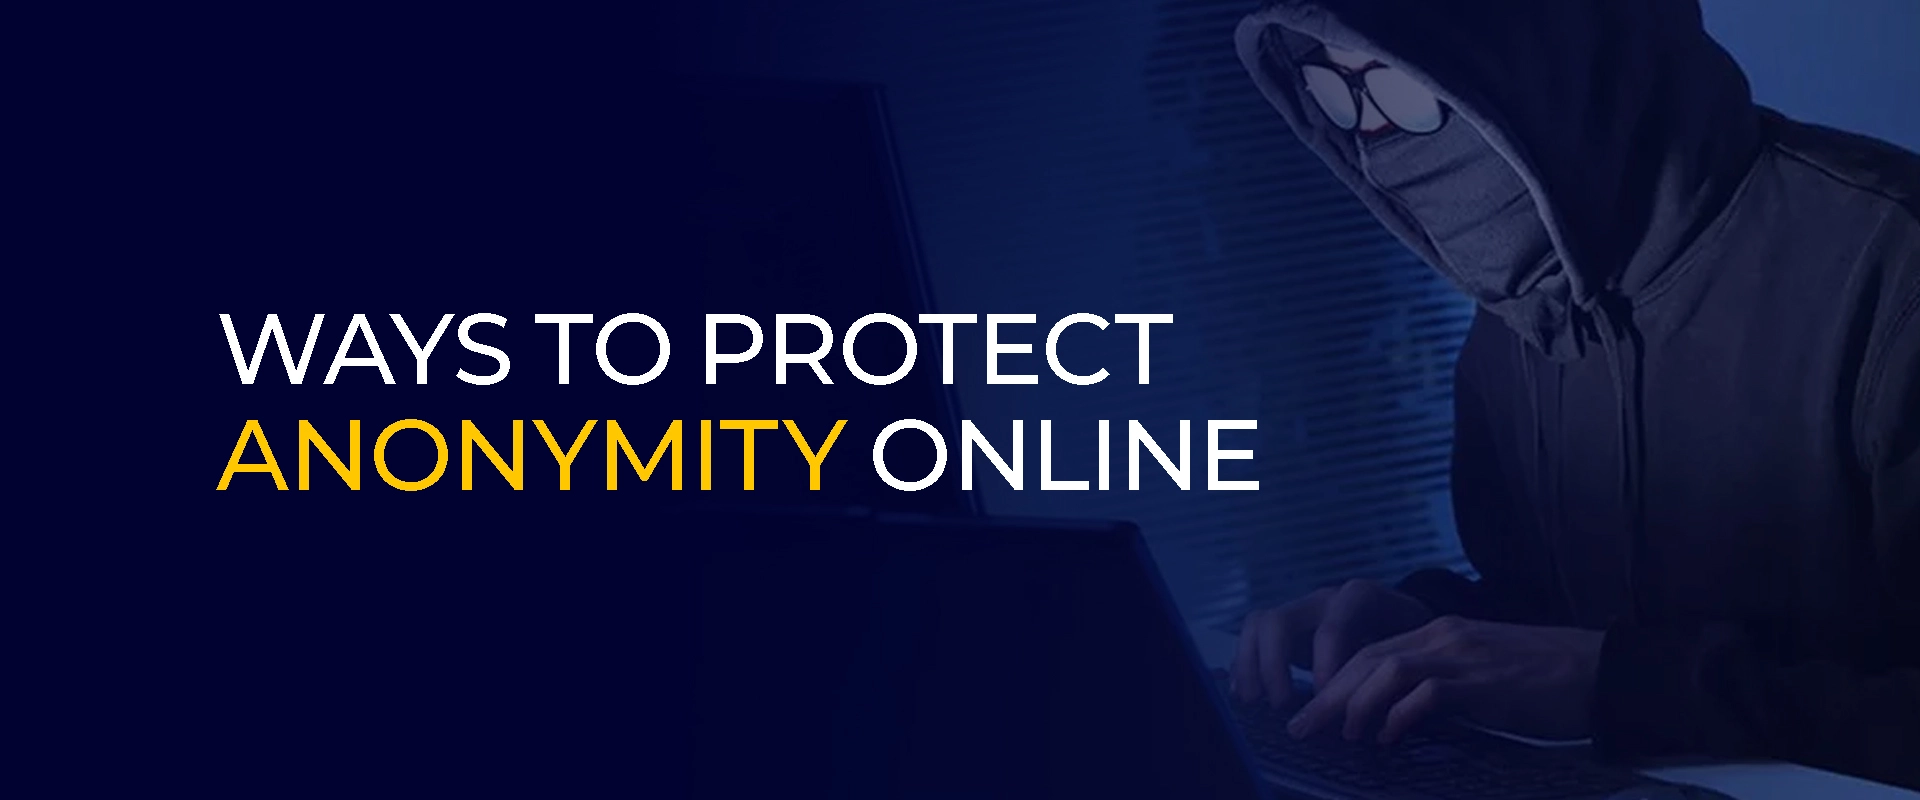 Möglichkeiten zum Schutz der Anonymität im Internet